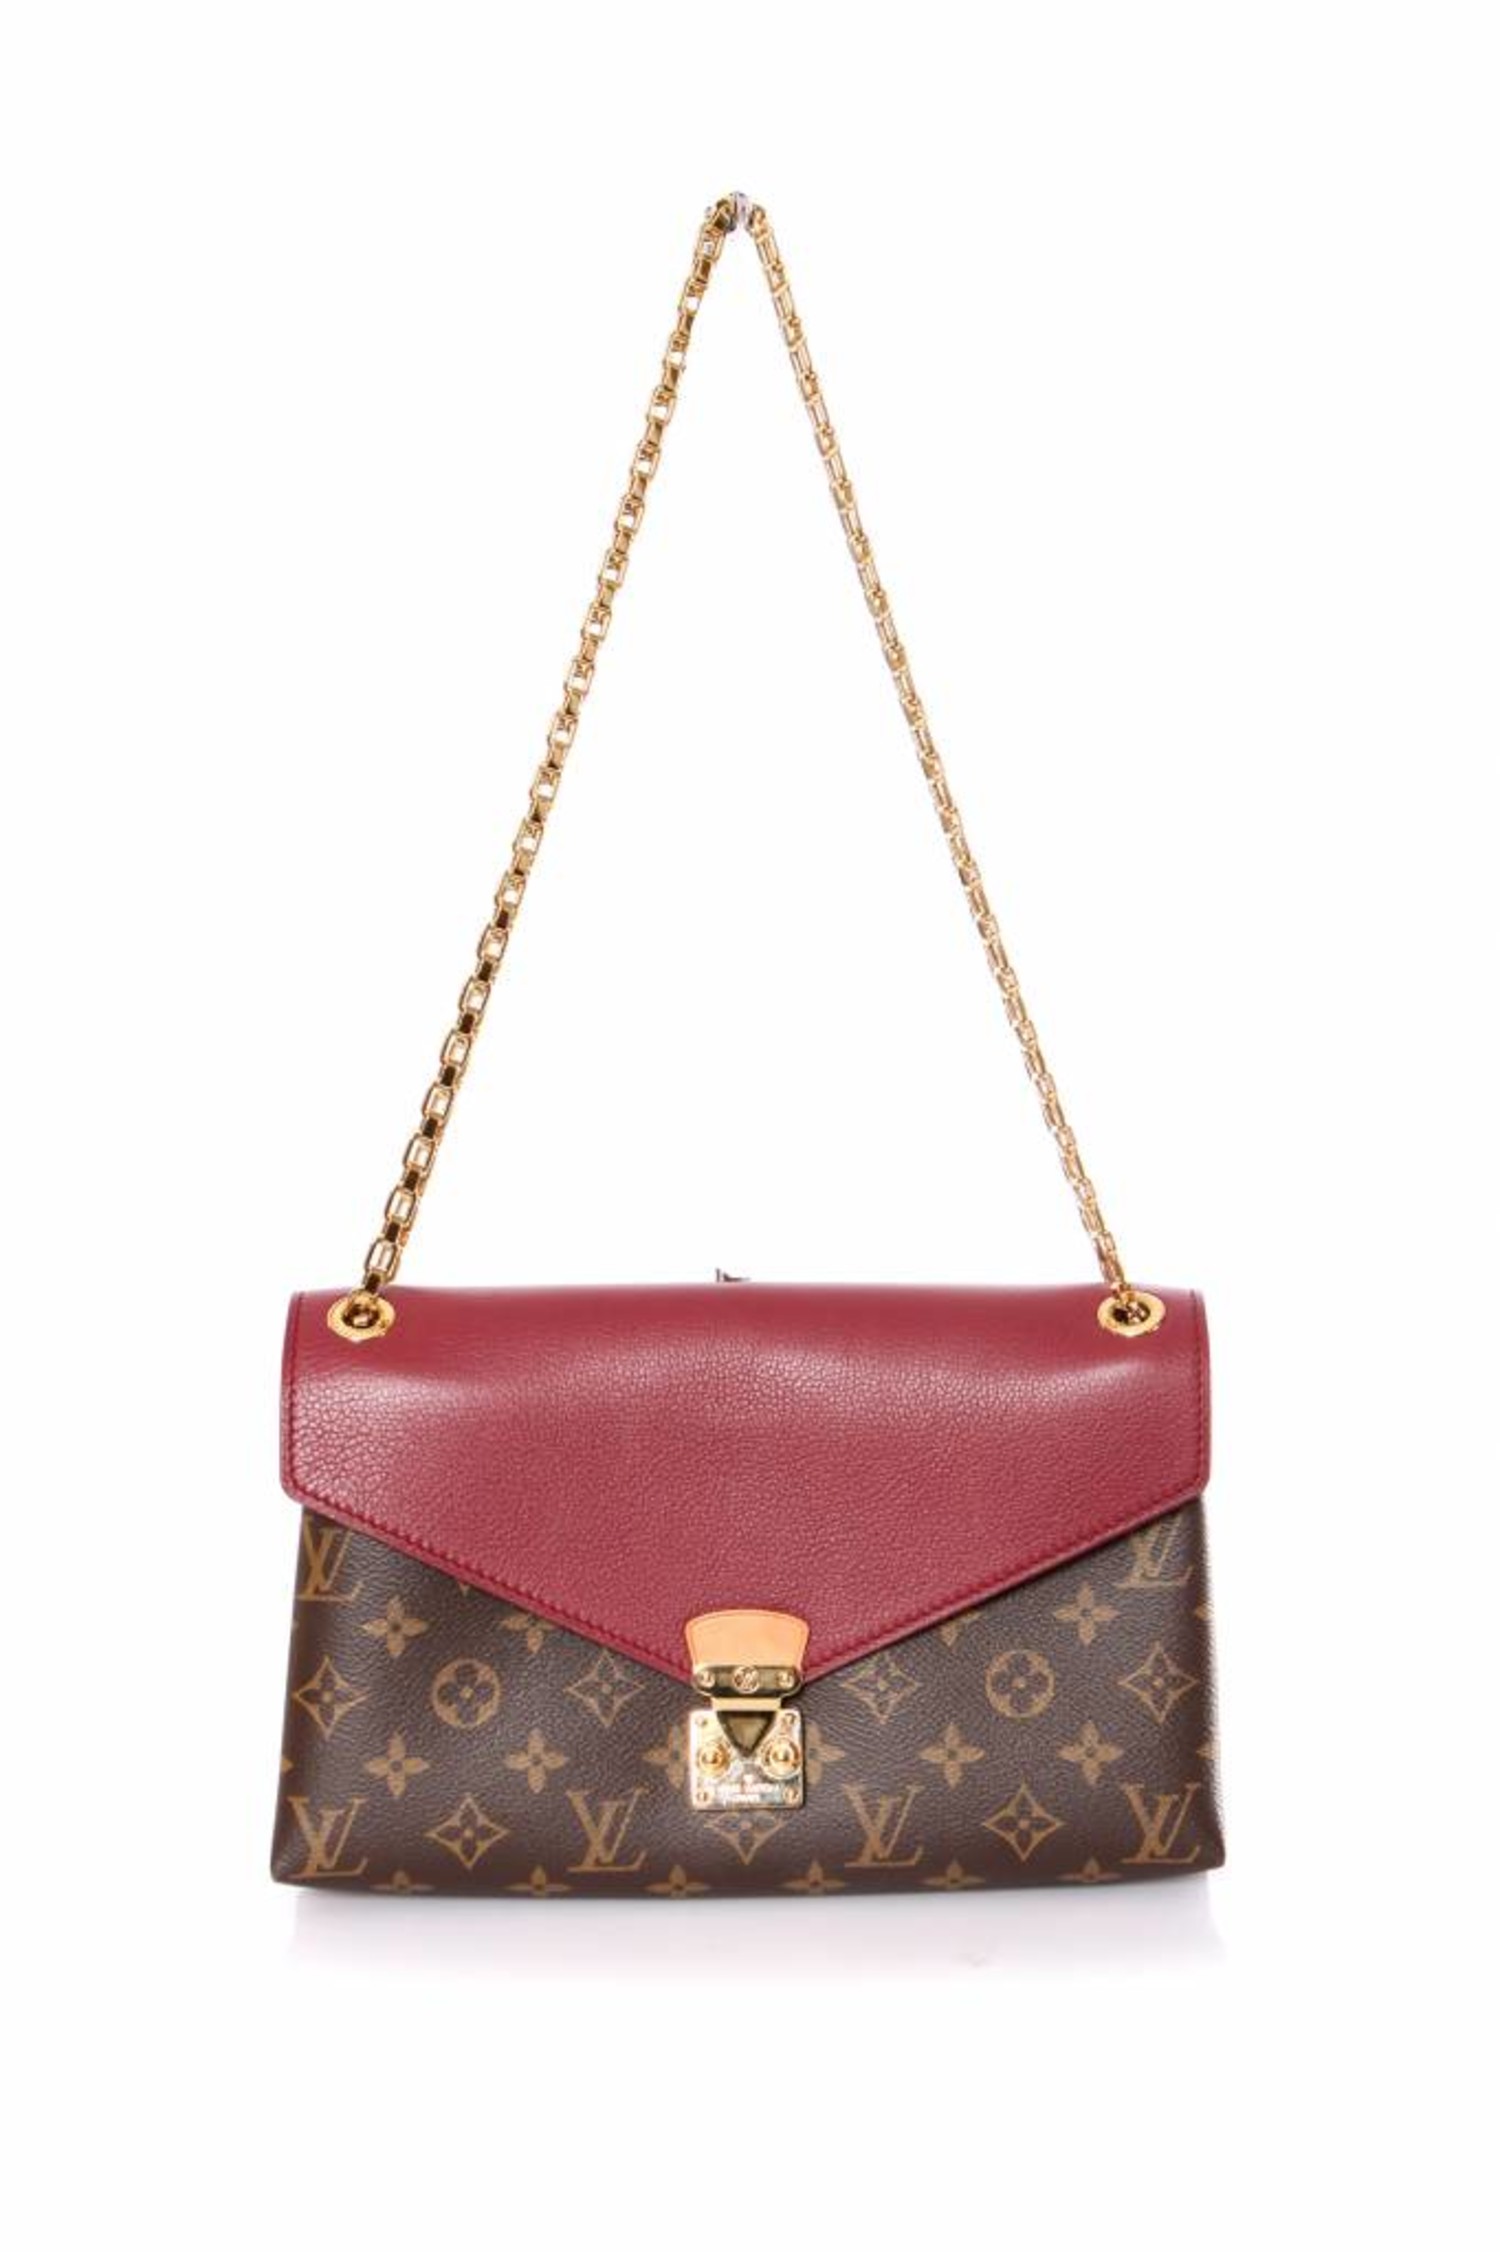 Louis Vuitton Pallas Monogram Shoulder Bag on SALE